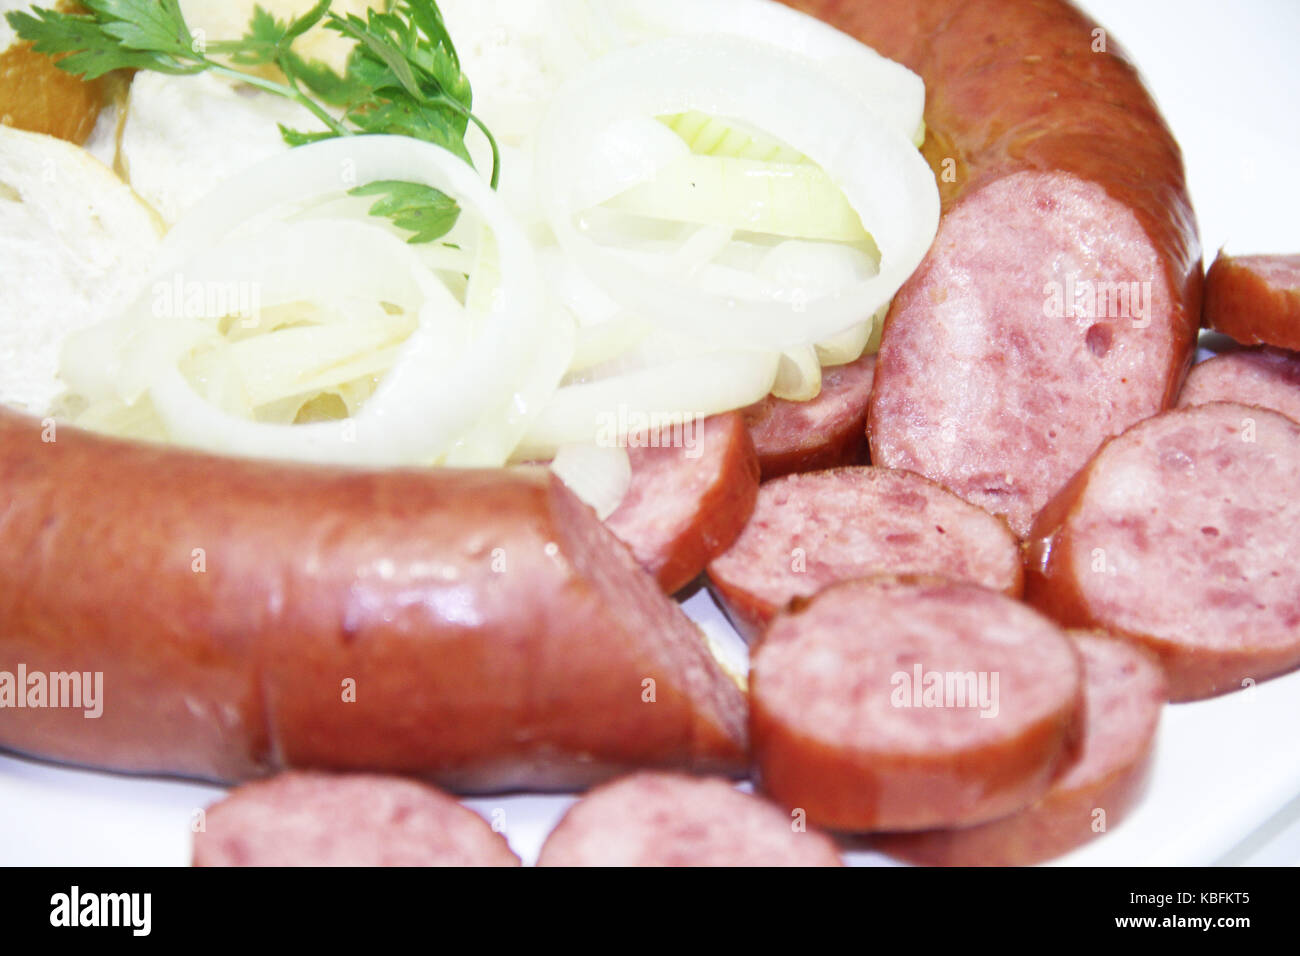 Sausage, pepperoni, onions, São Paulo, Brazil. Stock Photo